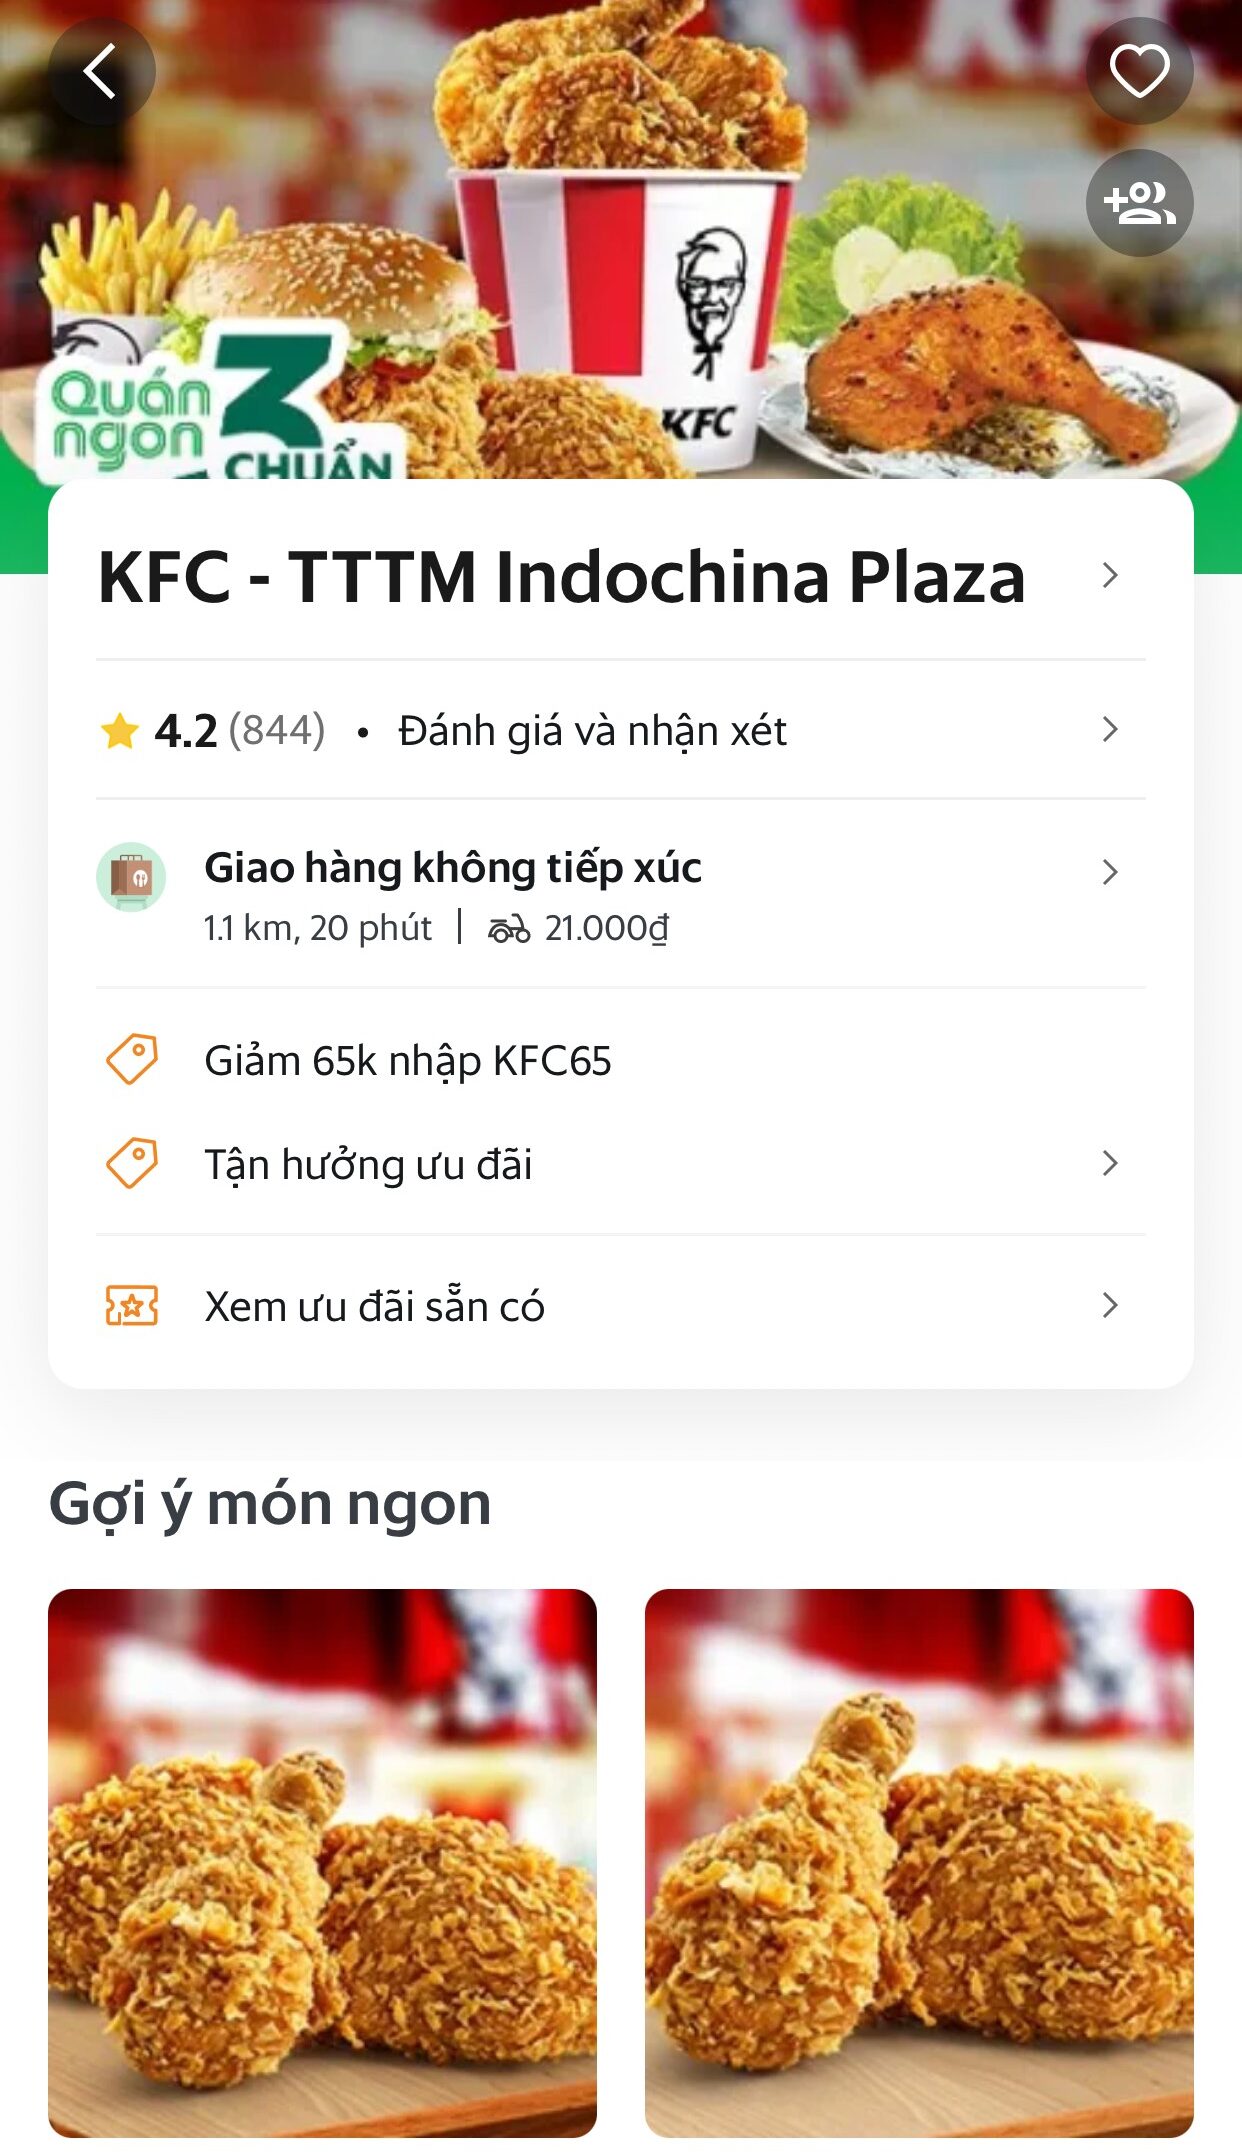 KFC trên ứng dụng giao hàng Grab